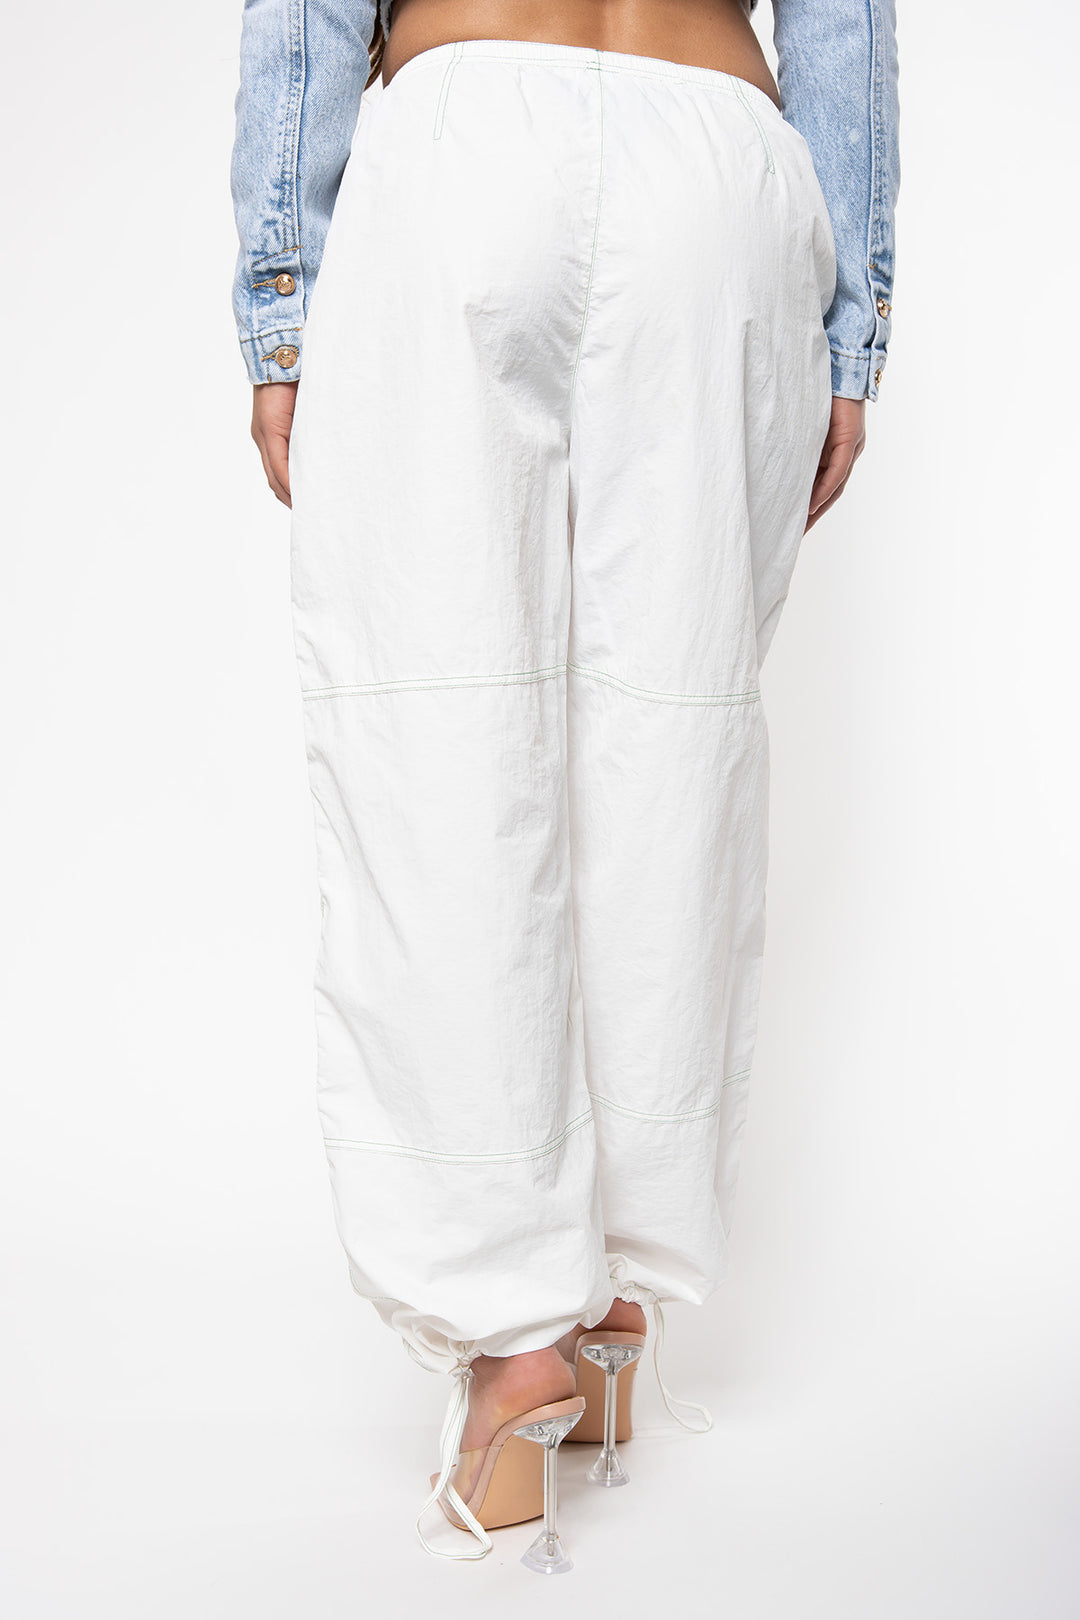 Carly Parachute Pants - White Pants Routines Fashion   